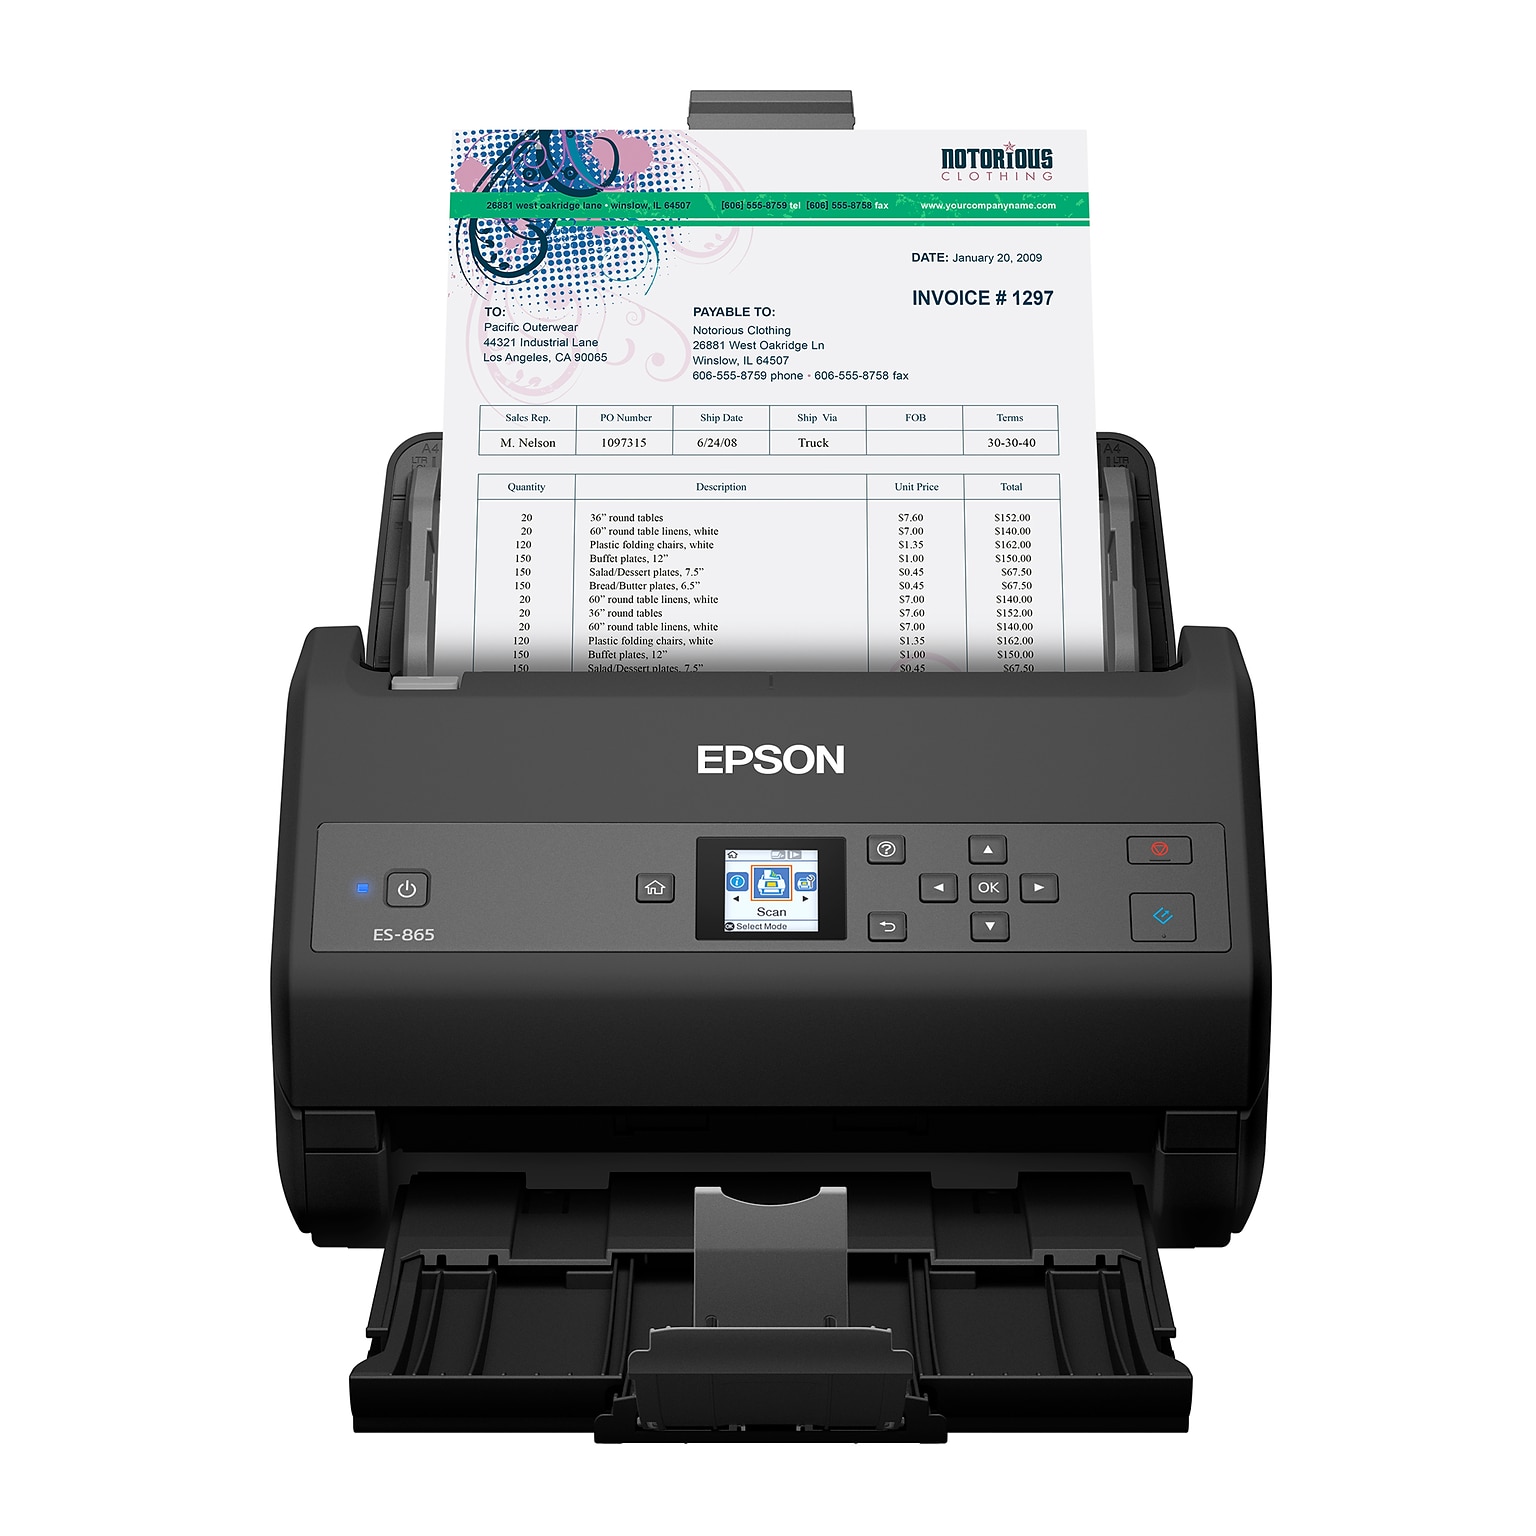 Epson ES-865 High-Speed Duplex Desktop Document Scanner (B11B250202)